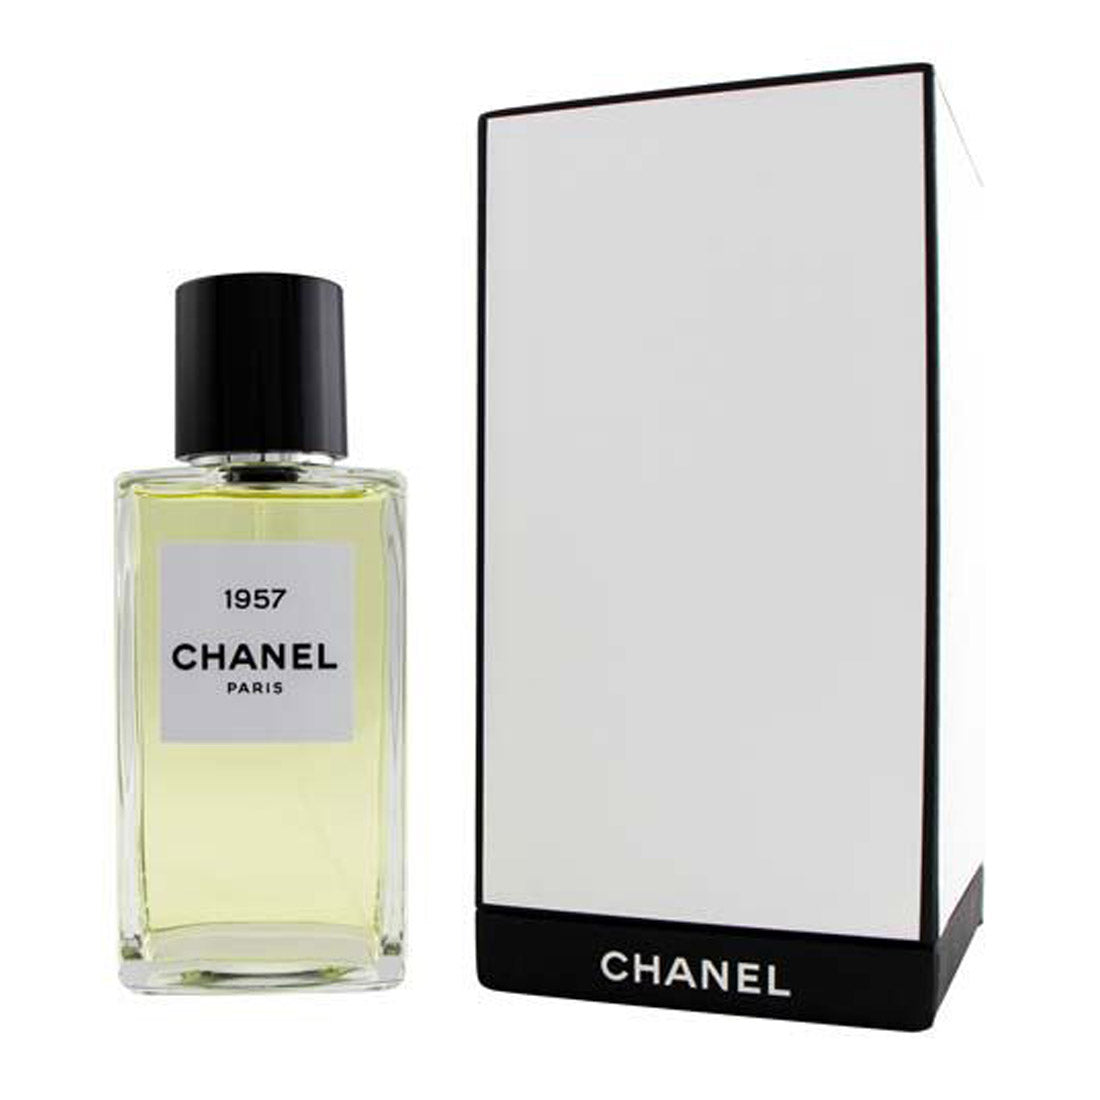 CHANEL (LES EXCLUSIFS DE CHANEL) 1957 Eau de Parfum (200ml)